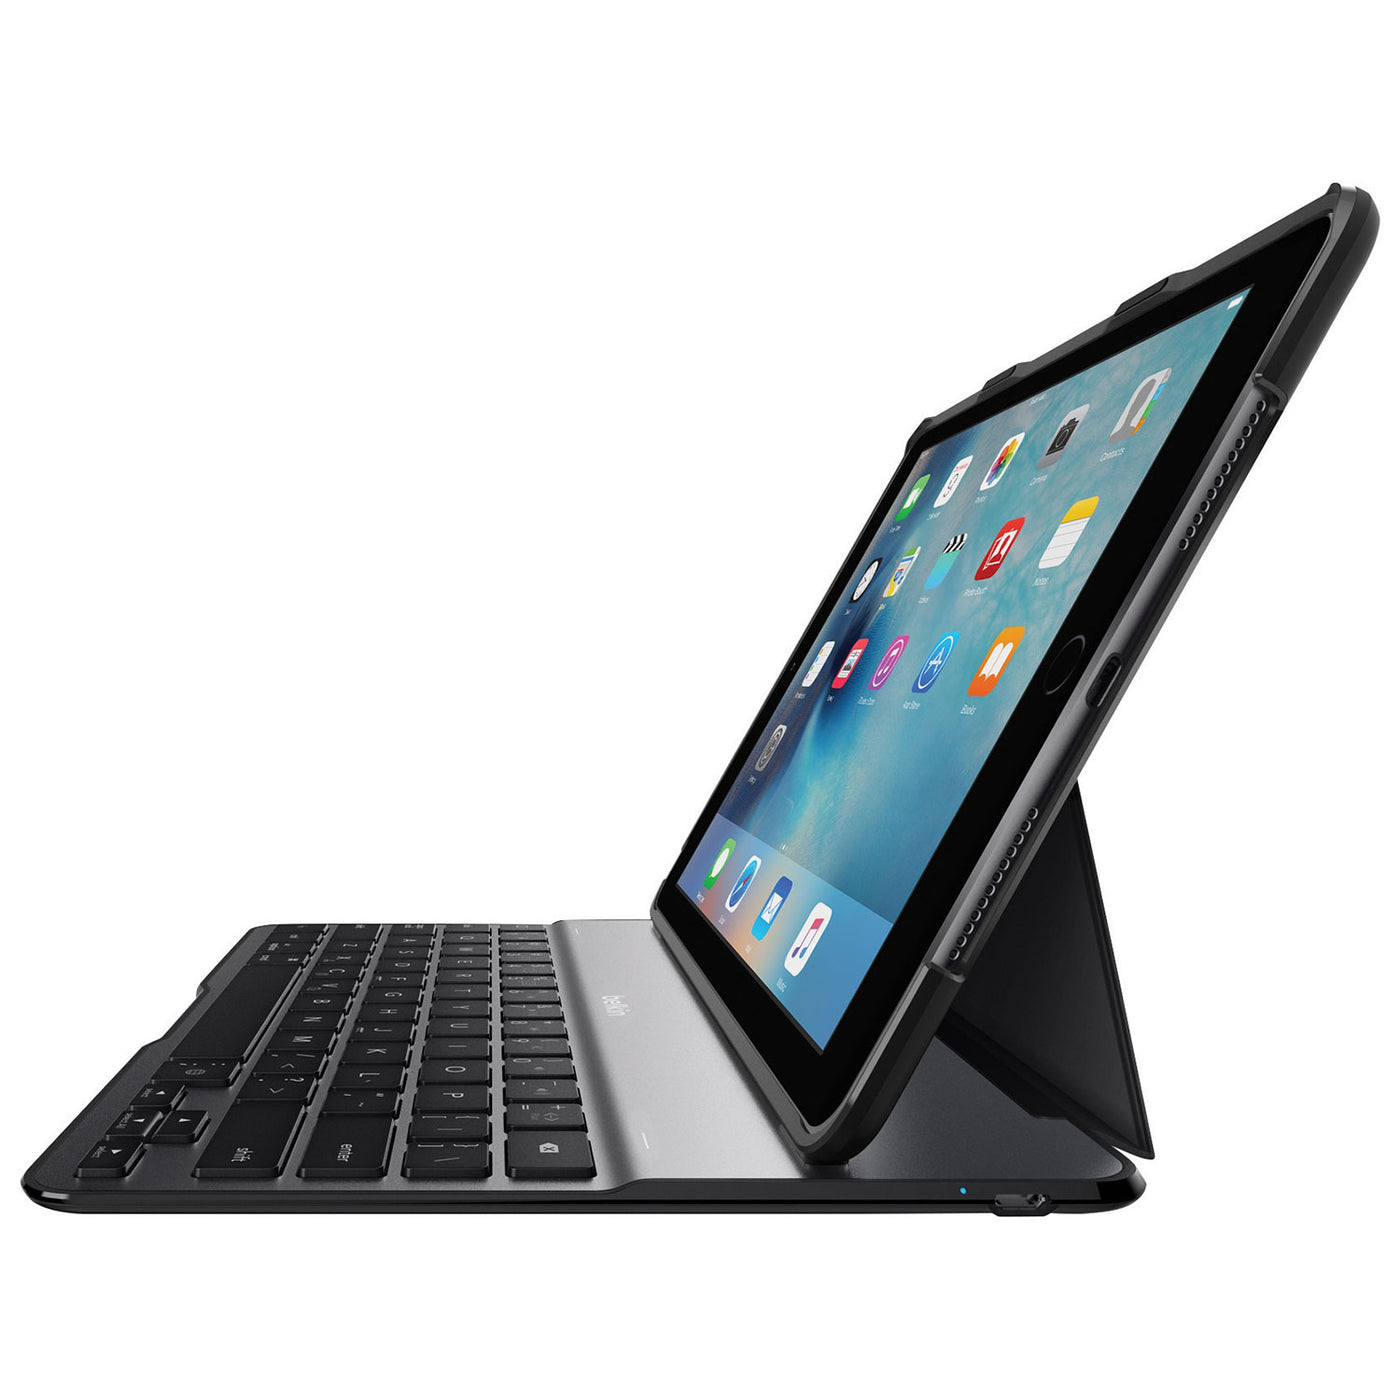 Belkin Ultimate Lite iPad Pro 9.7 inch Keyboard Case Black English